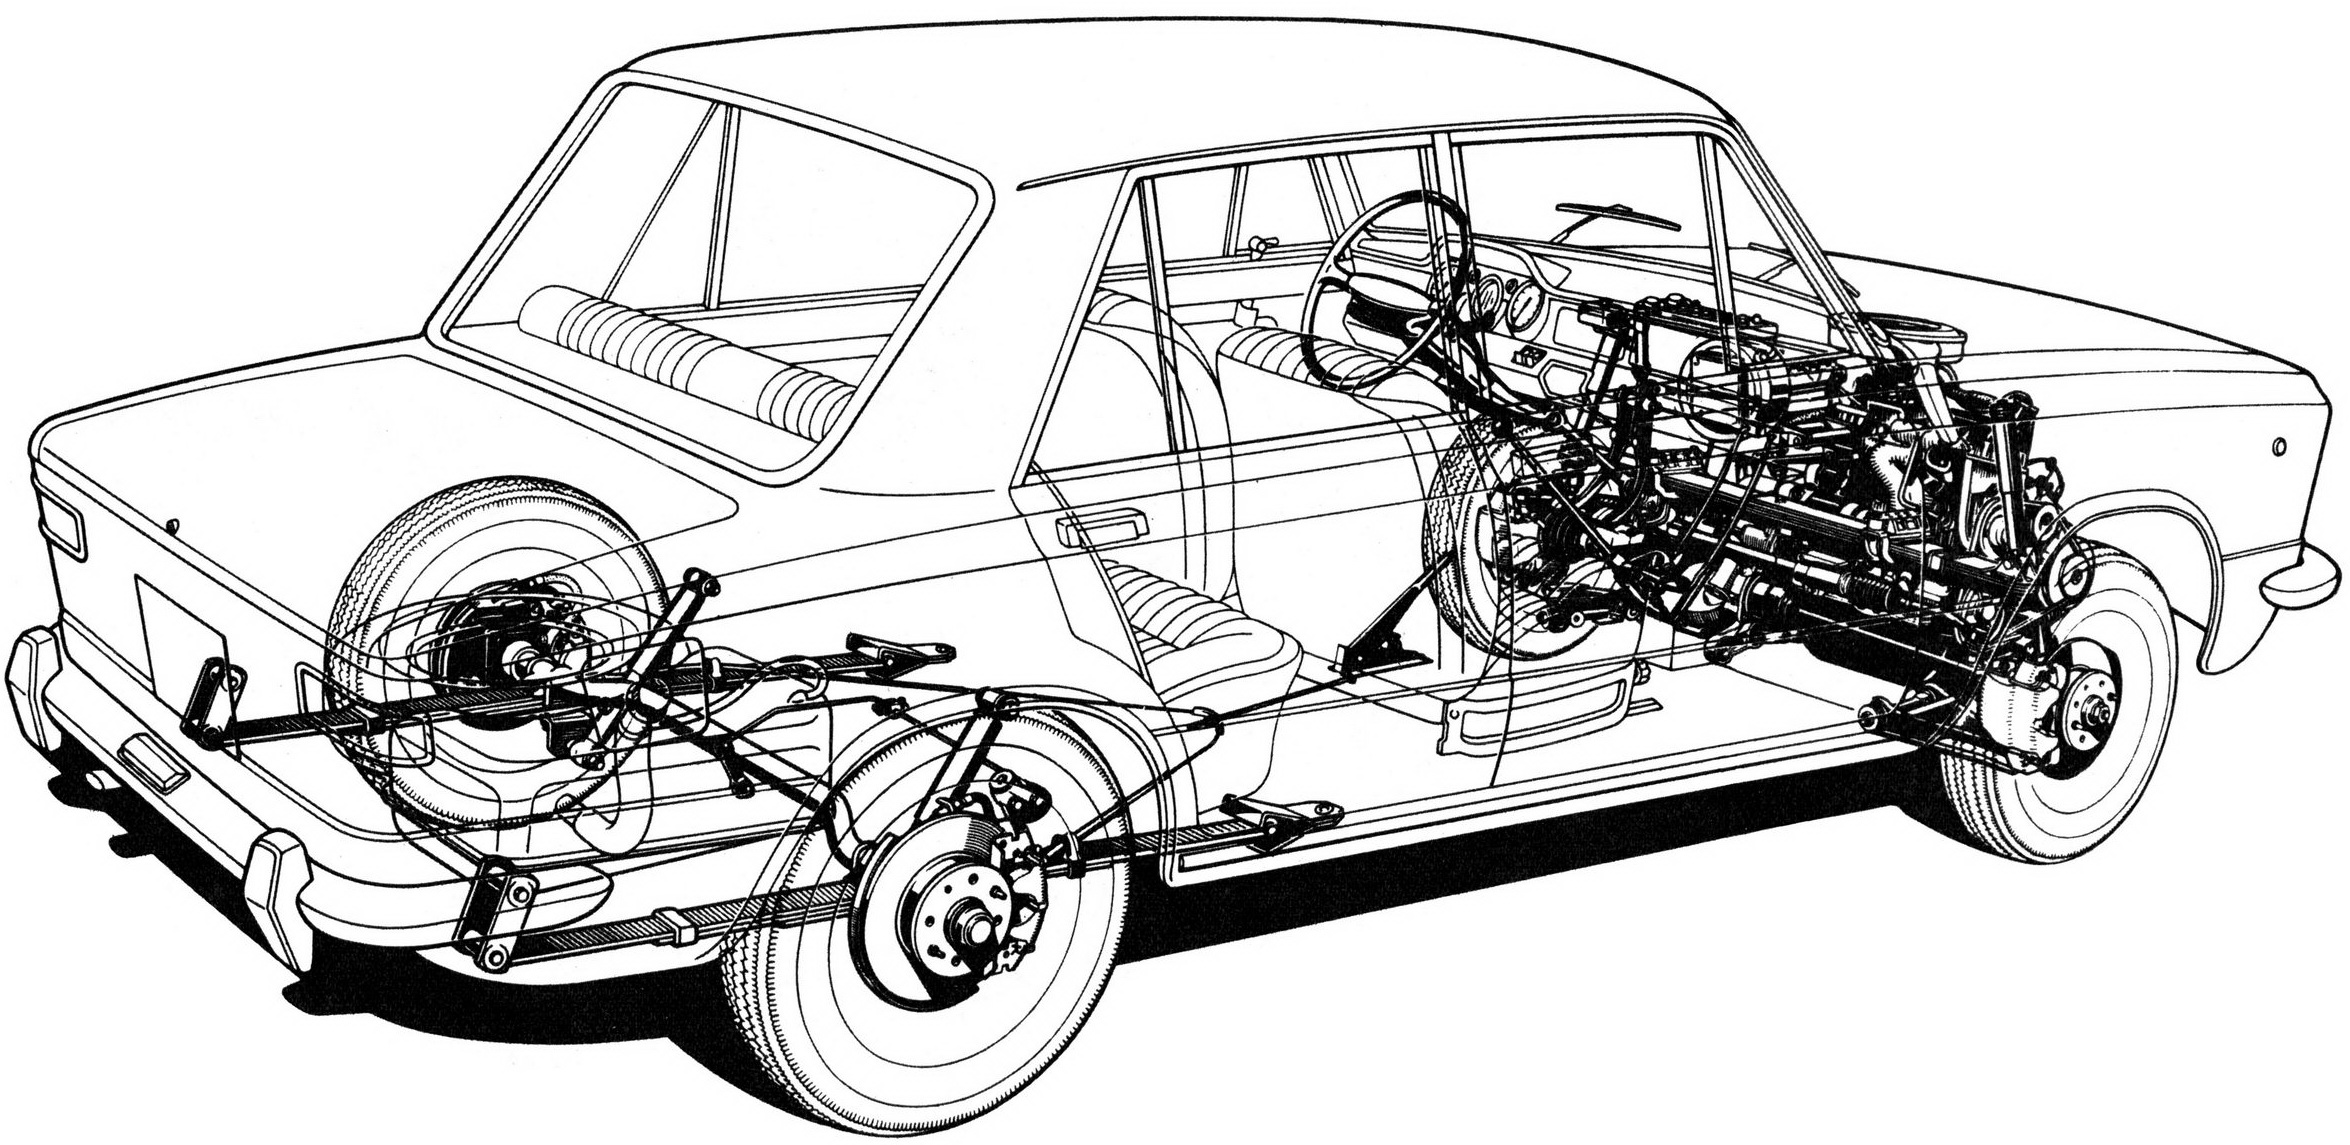 Autobianchi A111 1969-1972